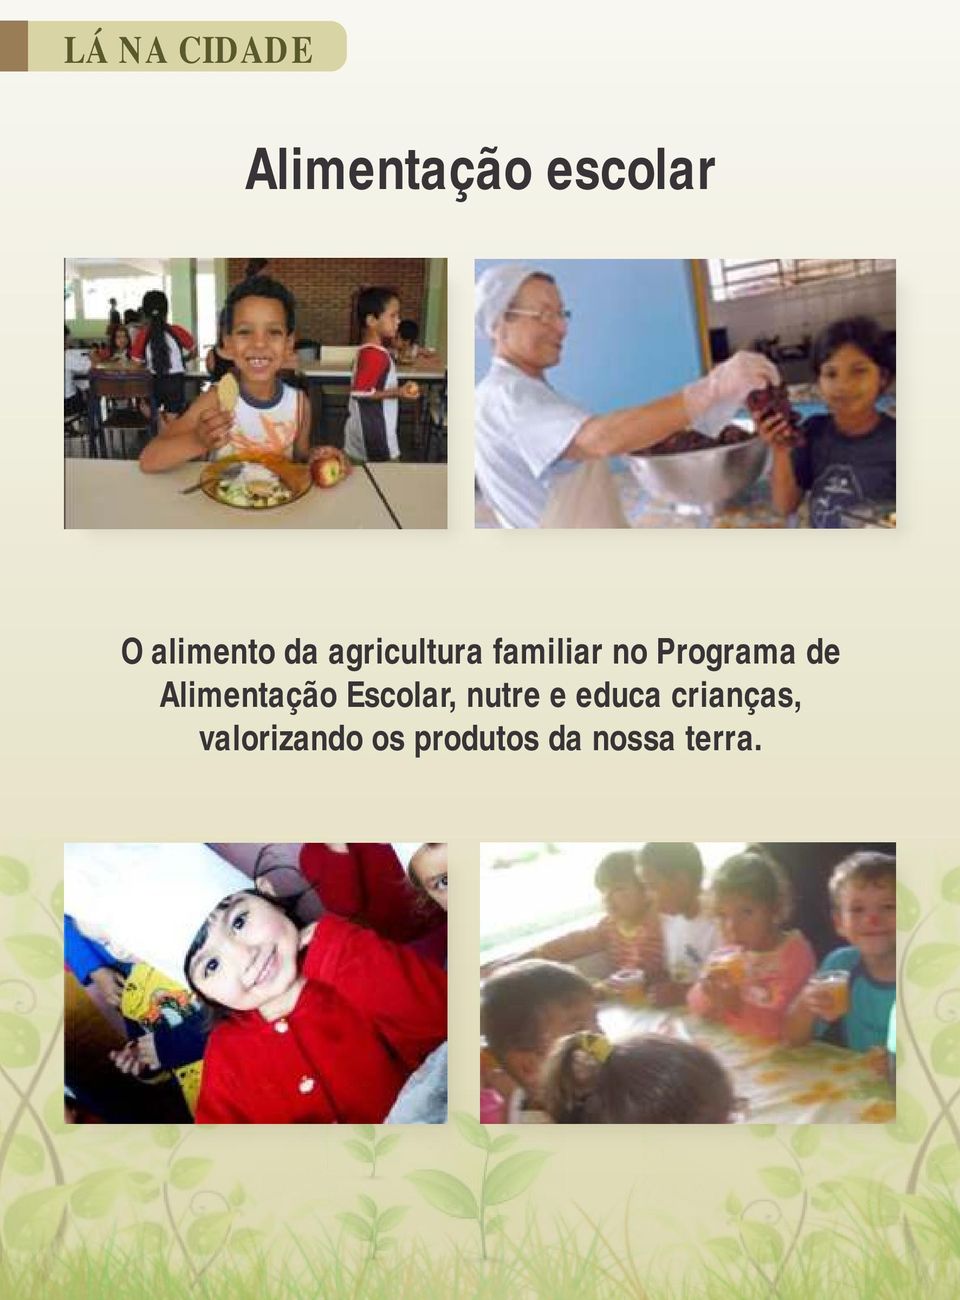 Programa de Alimentação Escolar, nutre e